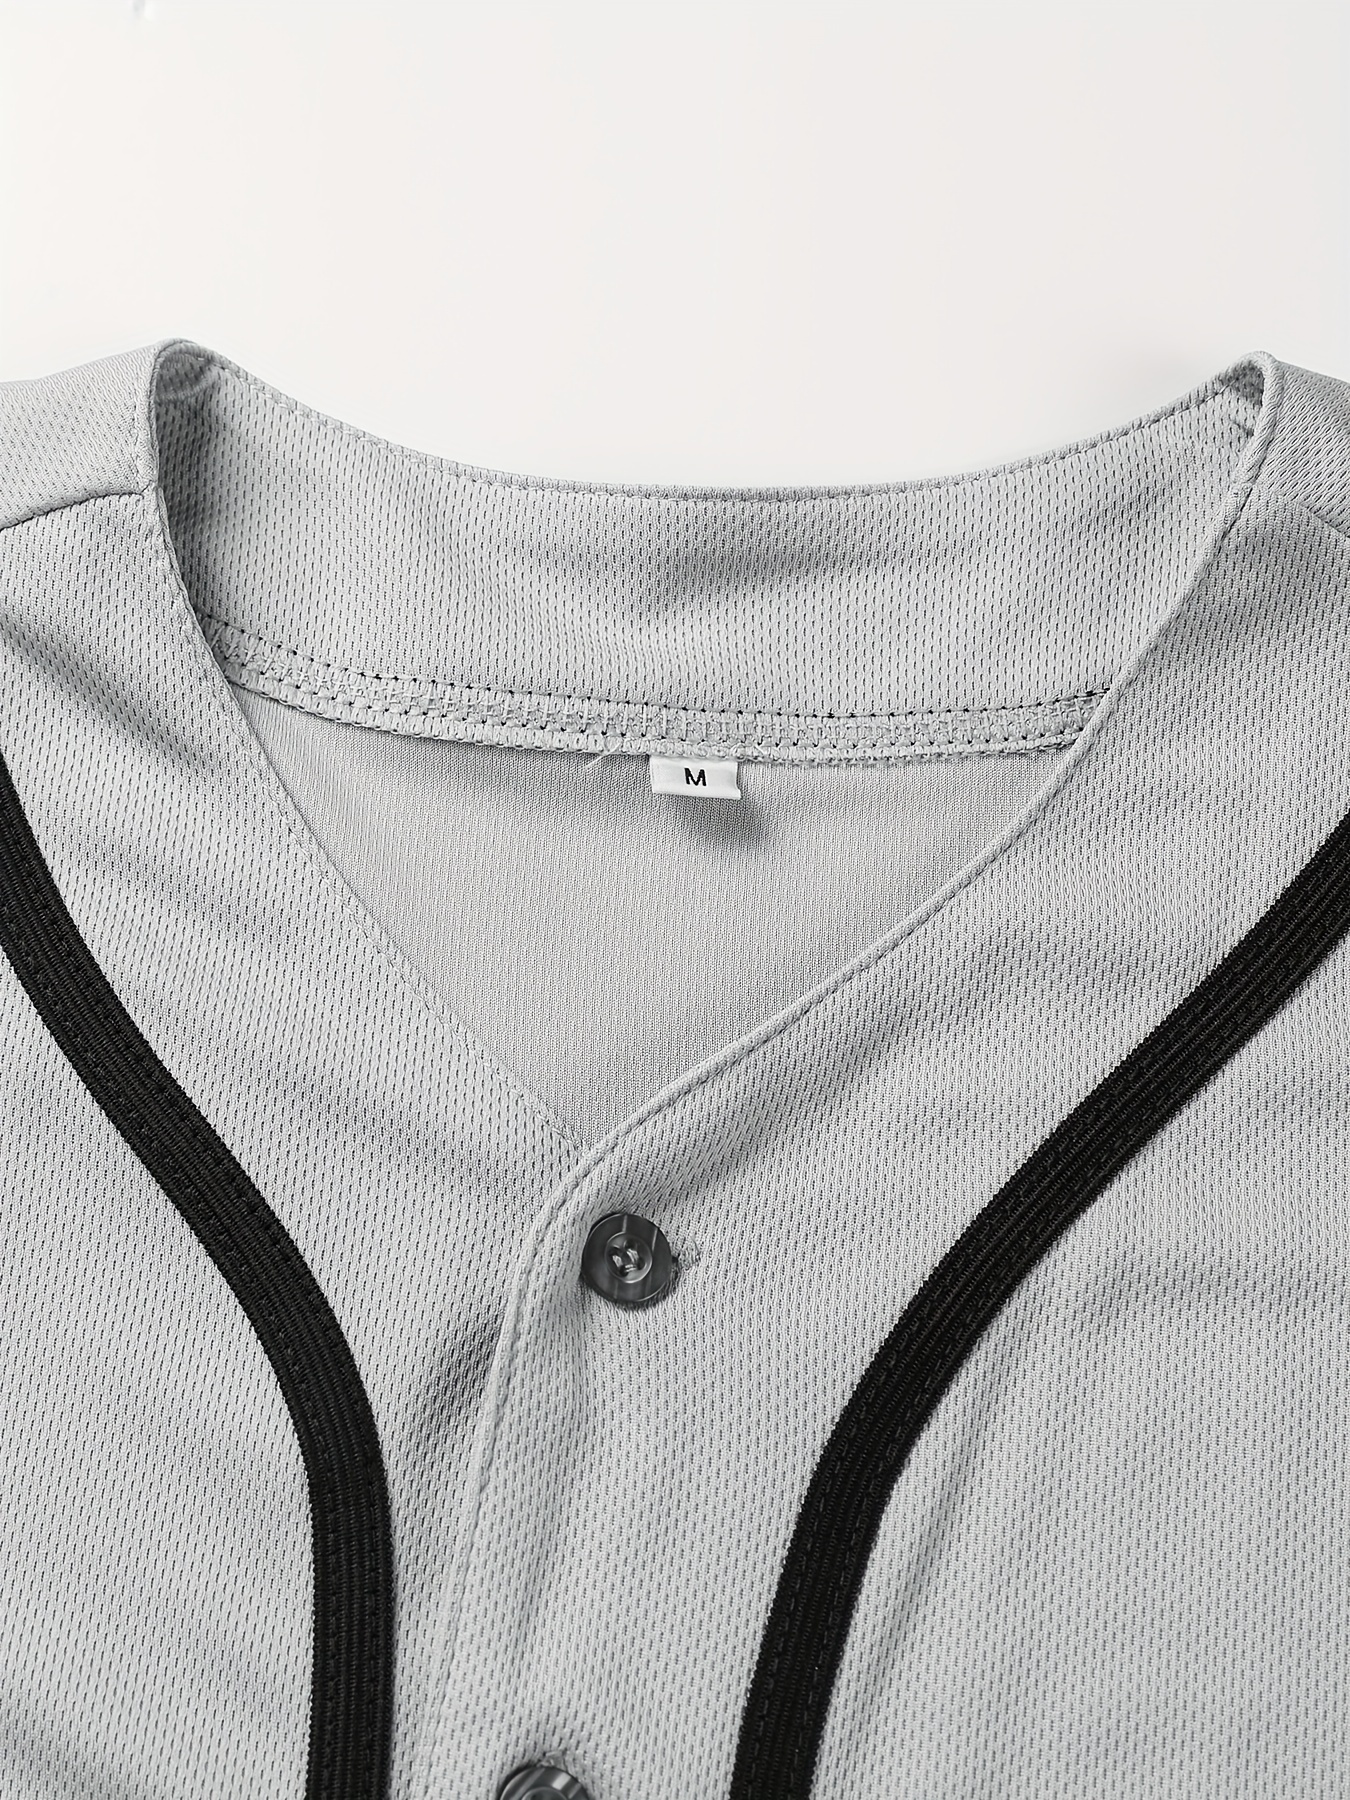 Blank Plain Hip Hop Hipster Baseball Jersey, Button Up Sport Shirt, Uniforms  For Men Women - Temu Japan